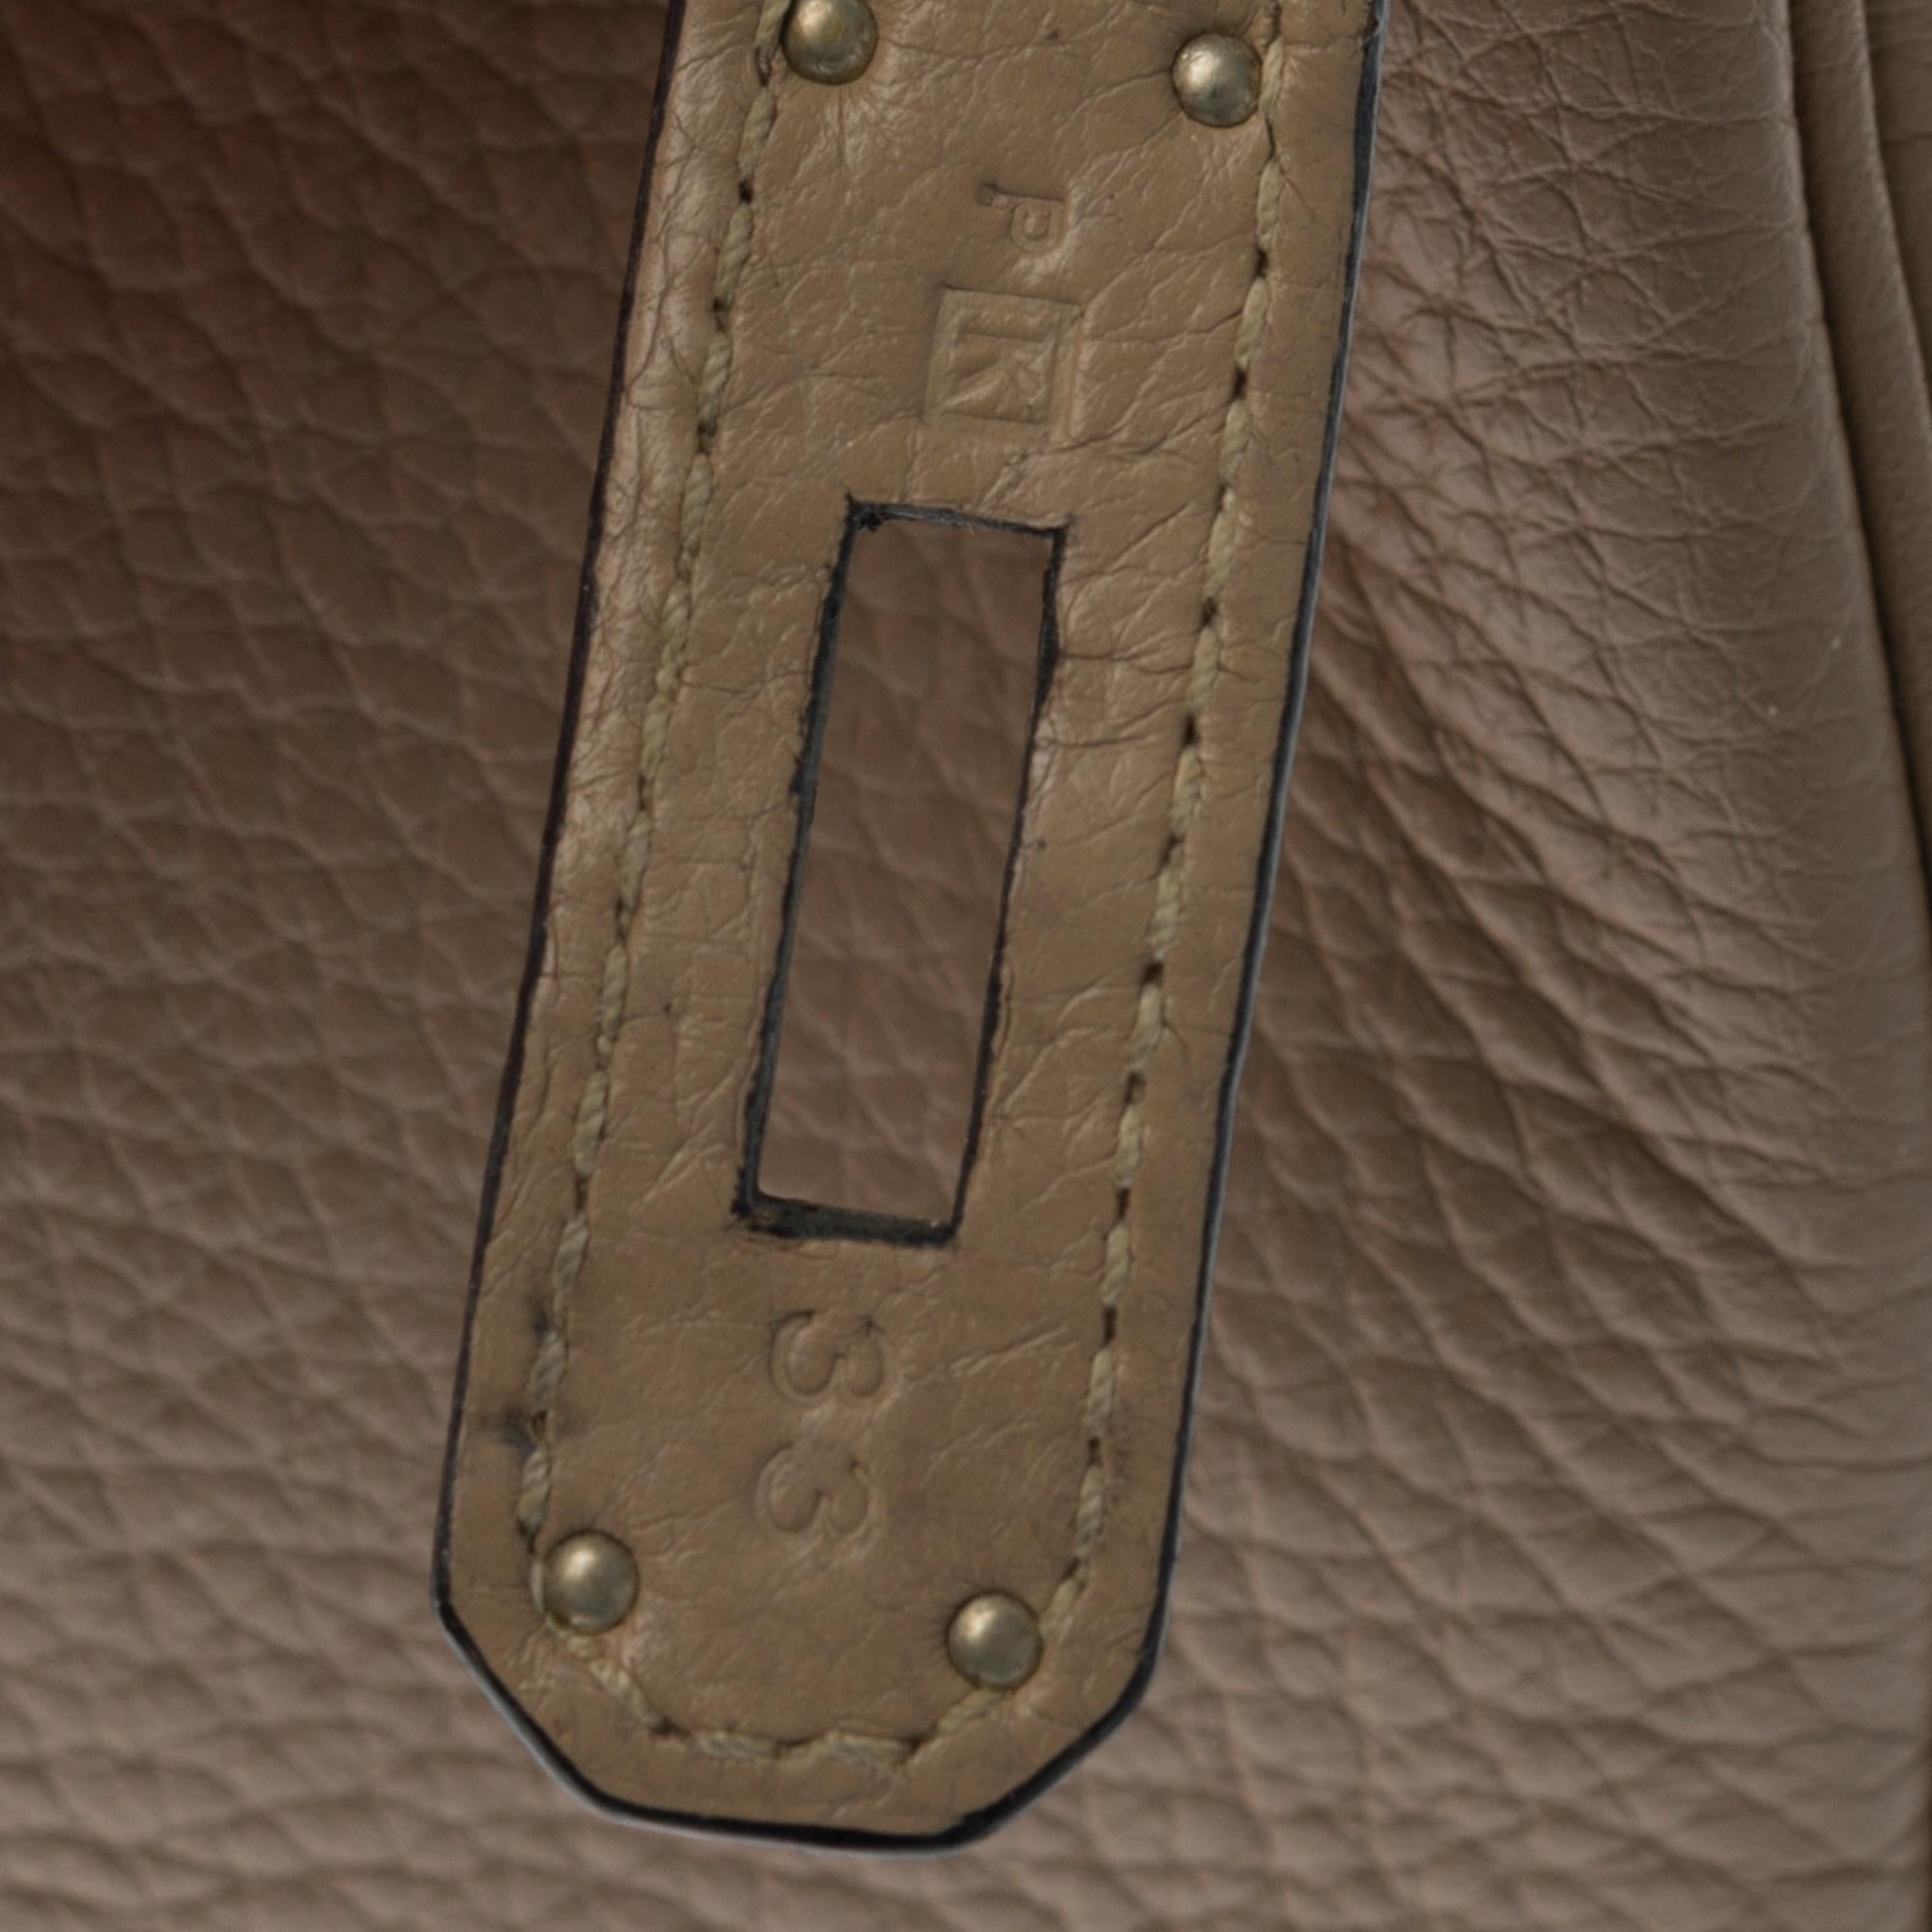 Women's Hermès Birkin 30 handbag in Trench Togo leather, silver Palladium hardware